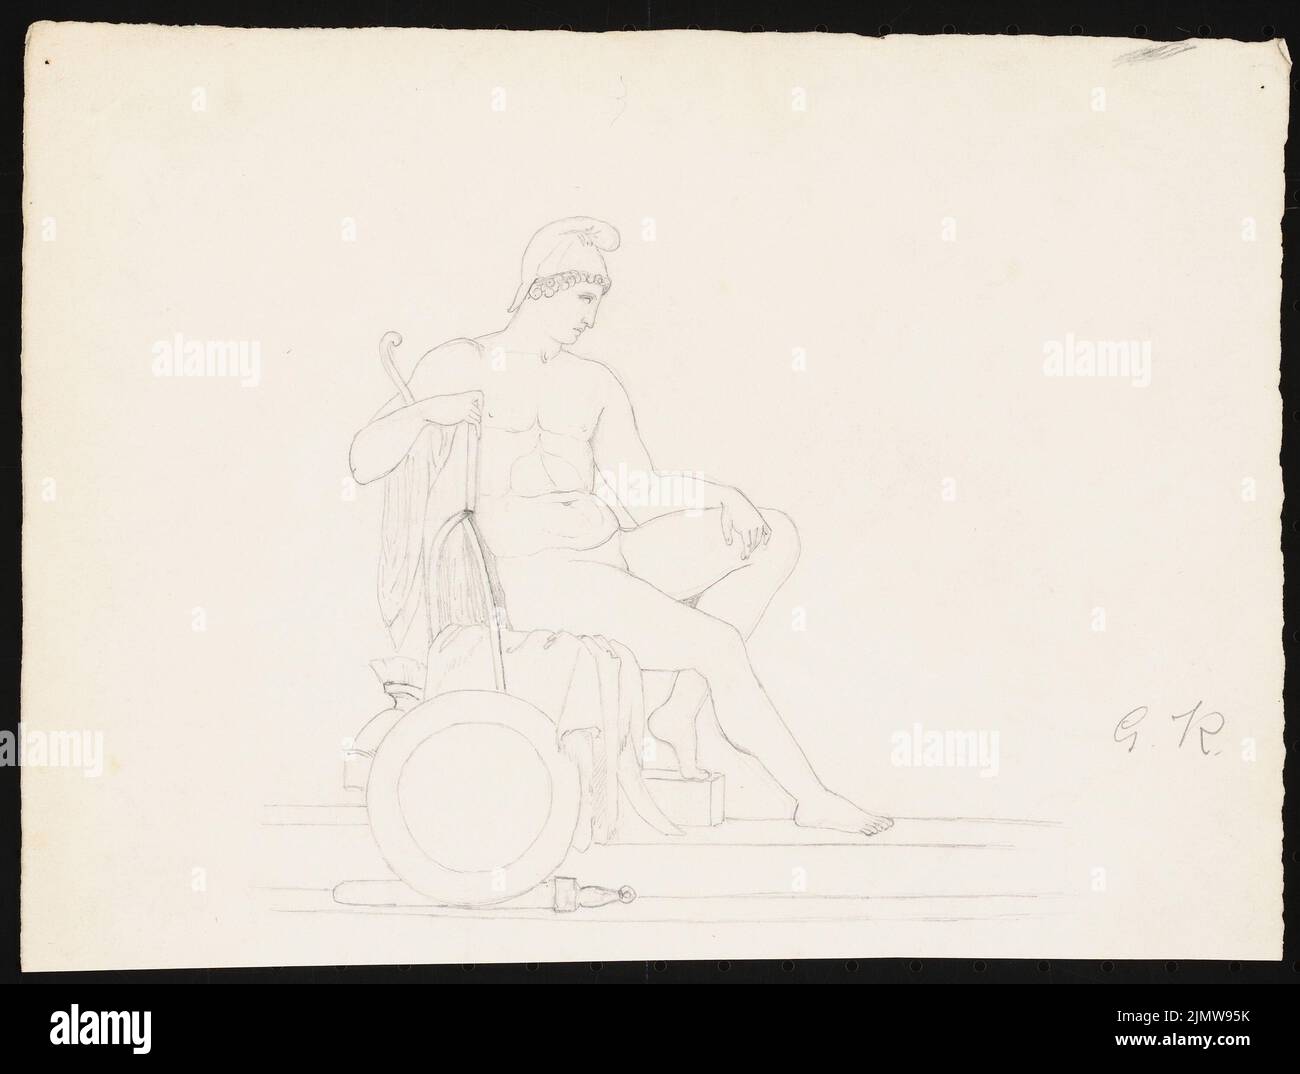 Knoblauch Gustav (1833-1916), Männerakt, sitzend (ohne Datum): Ansicht. Bleistift auf Papier, 21,5 x 28,4 cm (inklusive Scankanten) Knoblauch Gustav (1833-1916): Männlicher Akt, sitzend Stockfoto